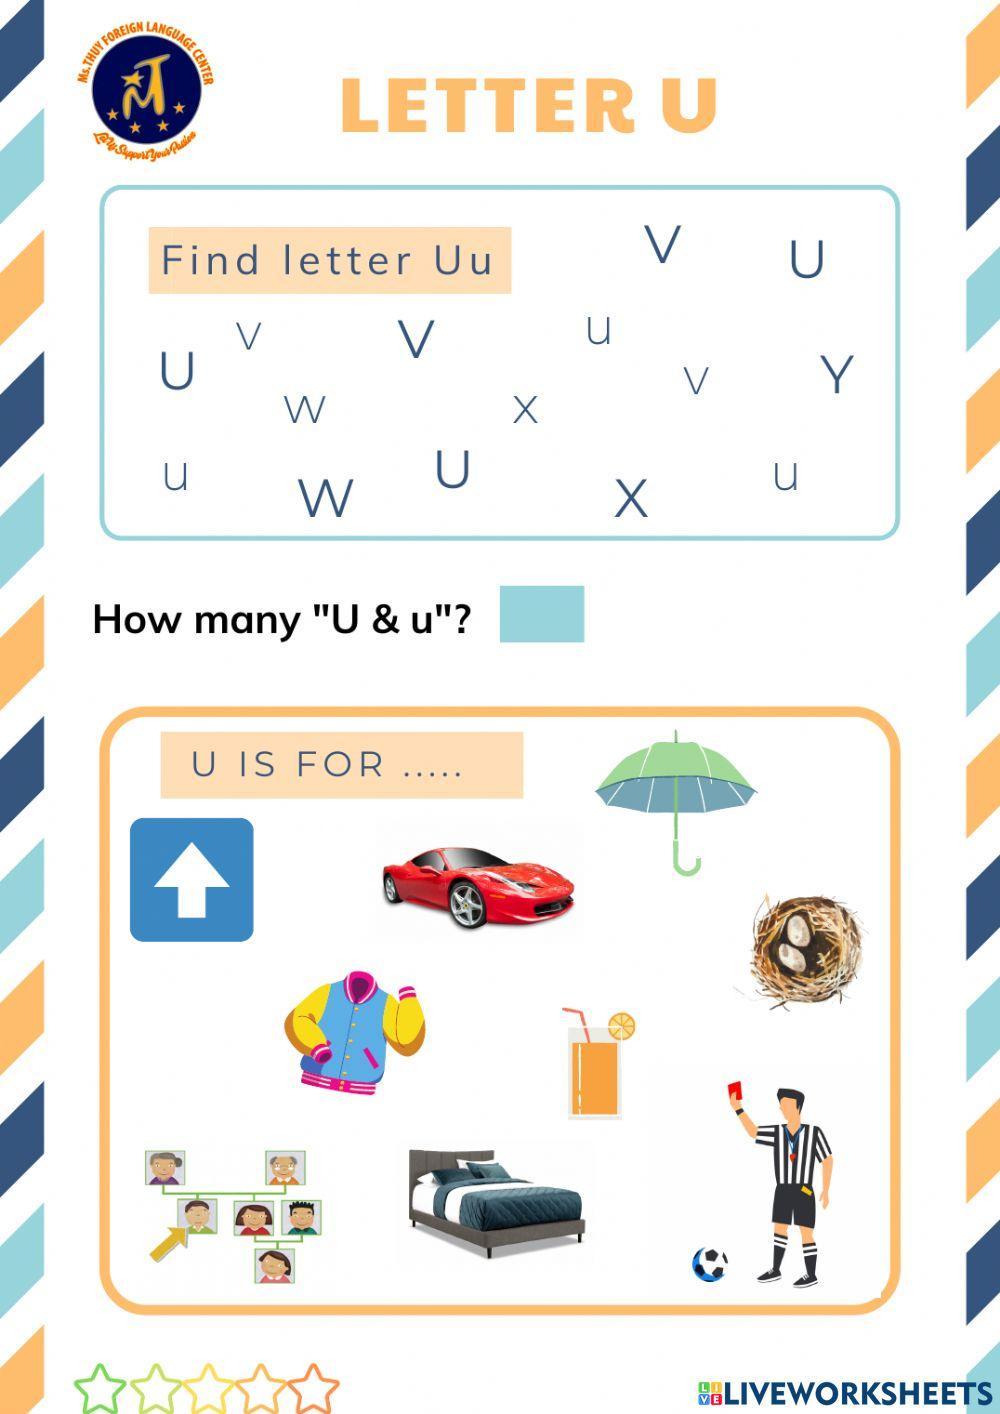 Find Letter Uu